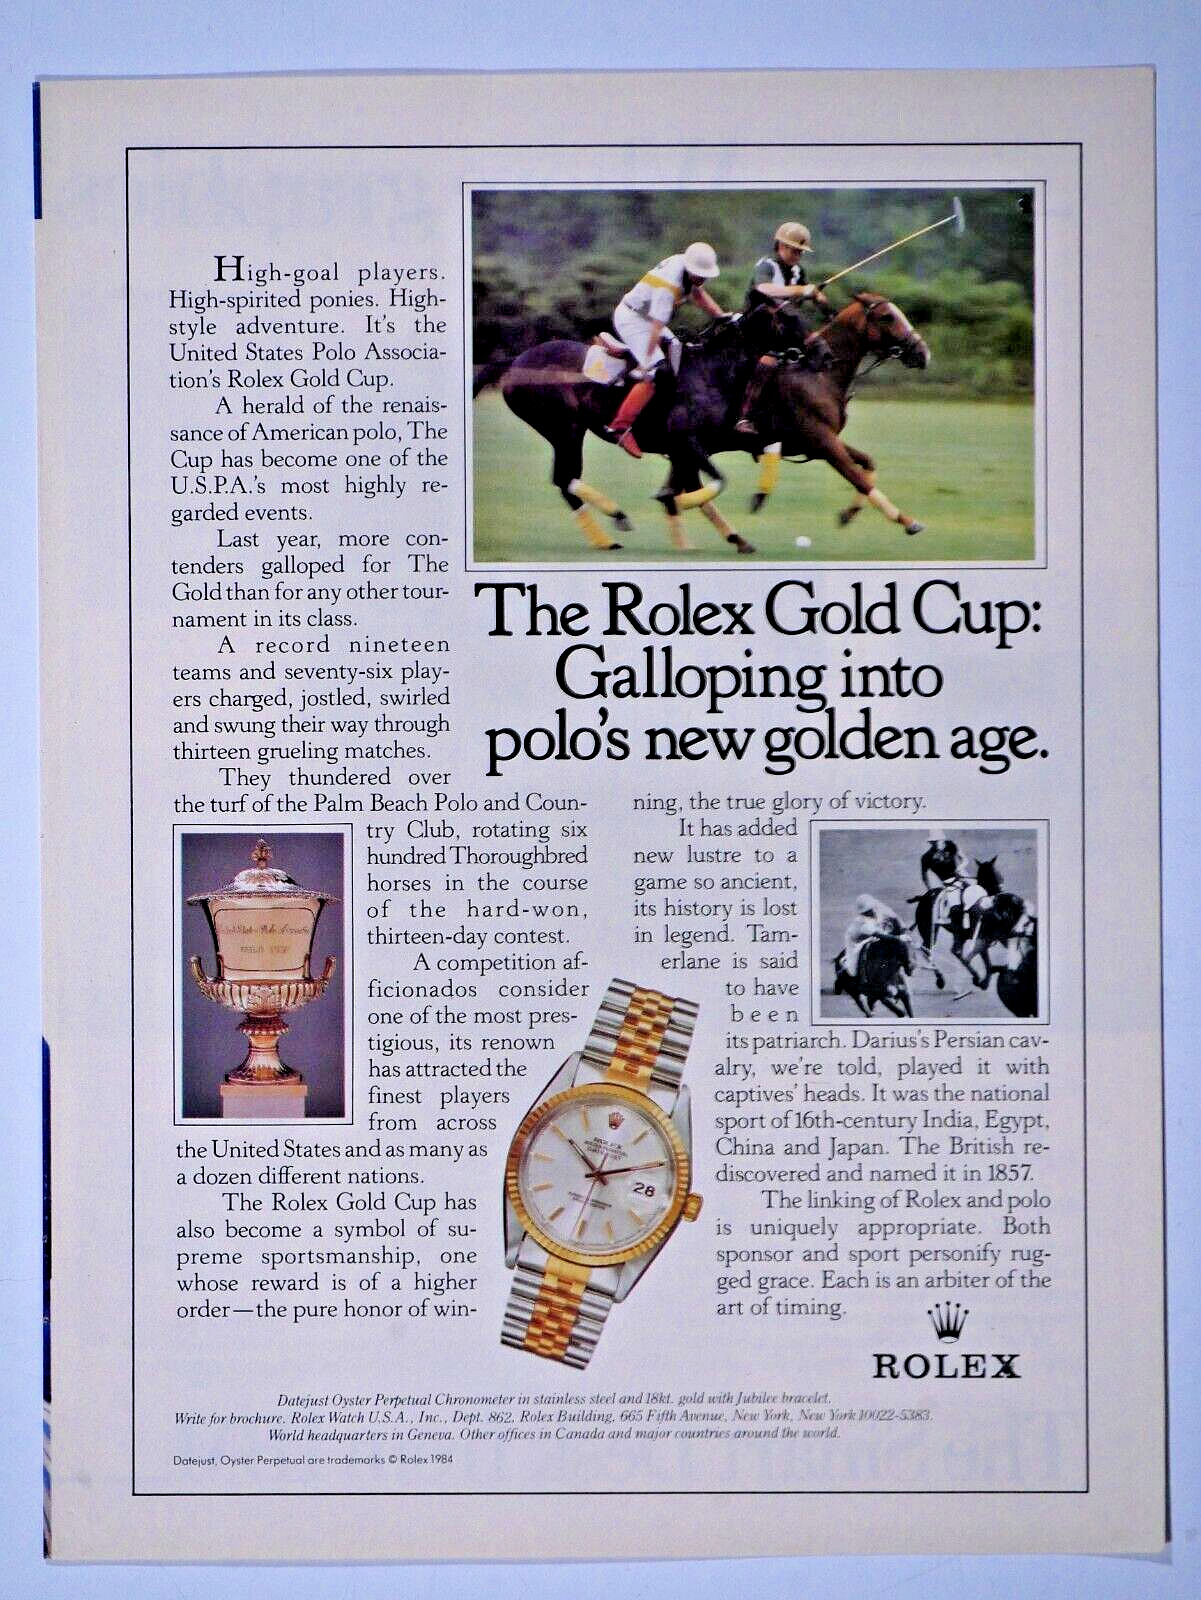 1989 Rolex Palm Beach Polo Club Gold Cup Original Print Ad 8.5 x 11